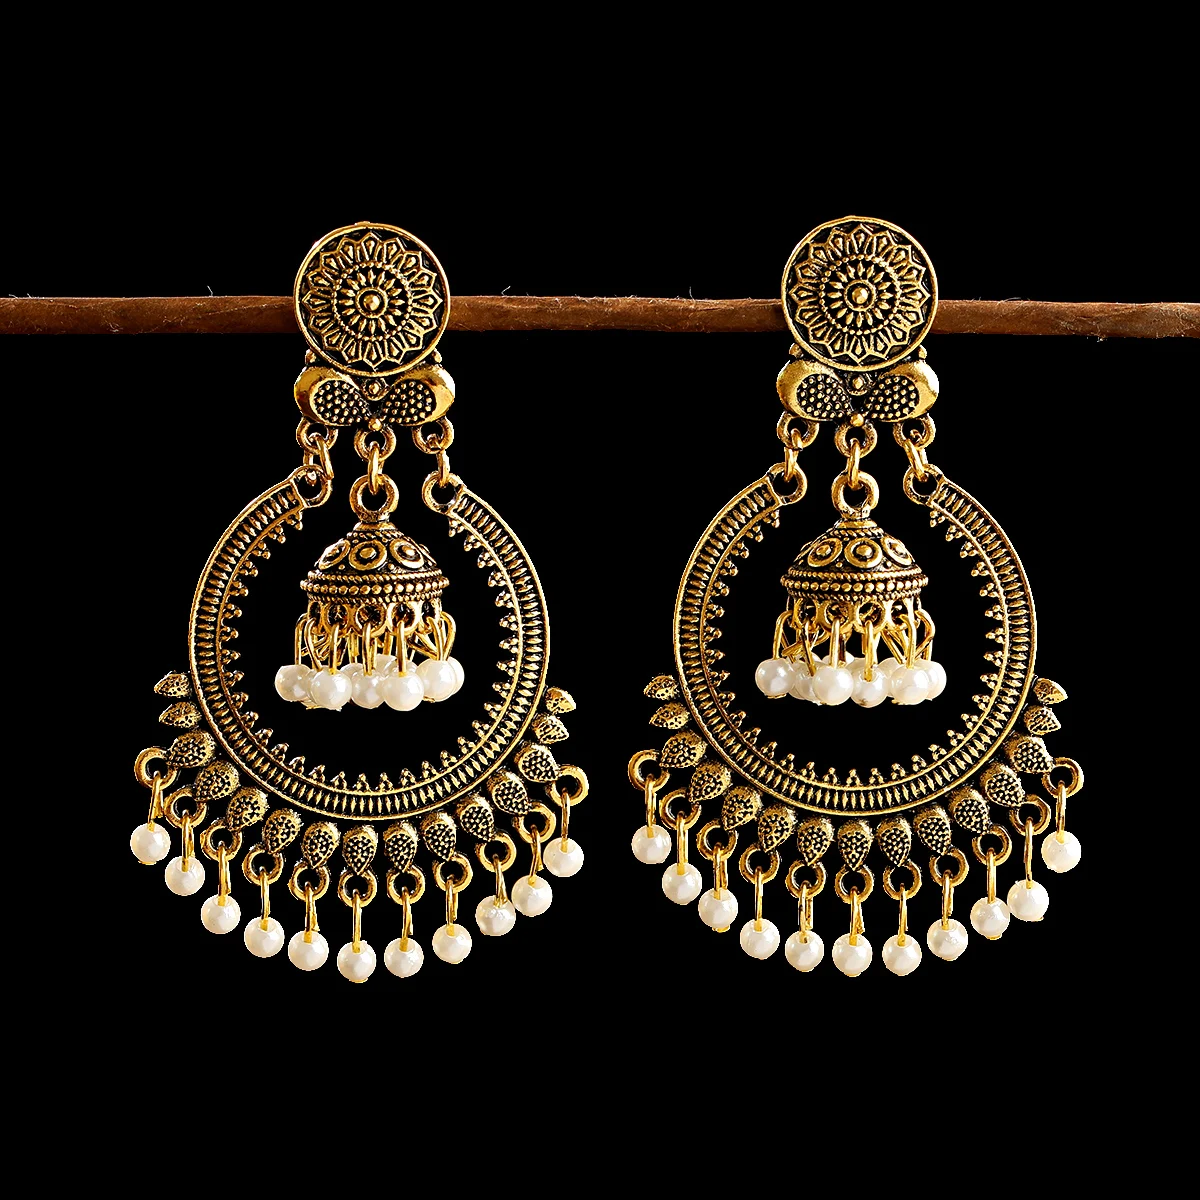 

Classic Women's Gypsy Gold Flower Wedding Earrings Boho Jewelry Ladies Retro Tassel Indian Jhumka Earrings Oorbellen Hangers, Gold/silver